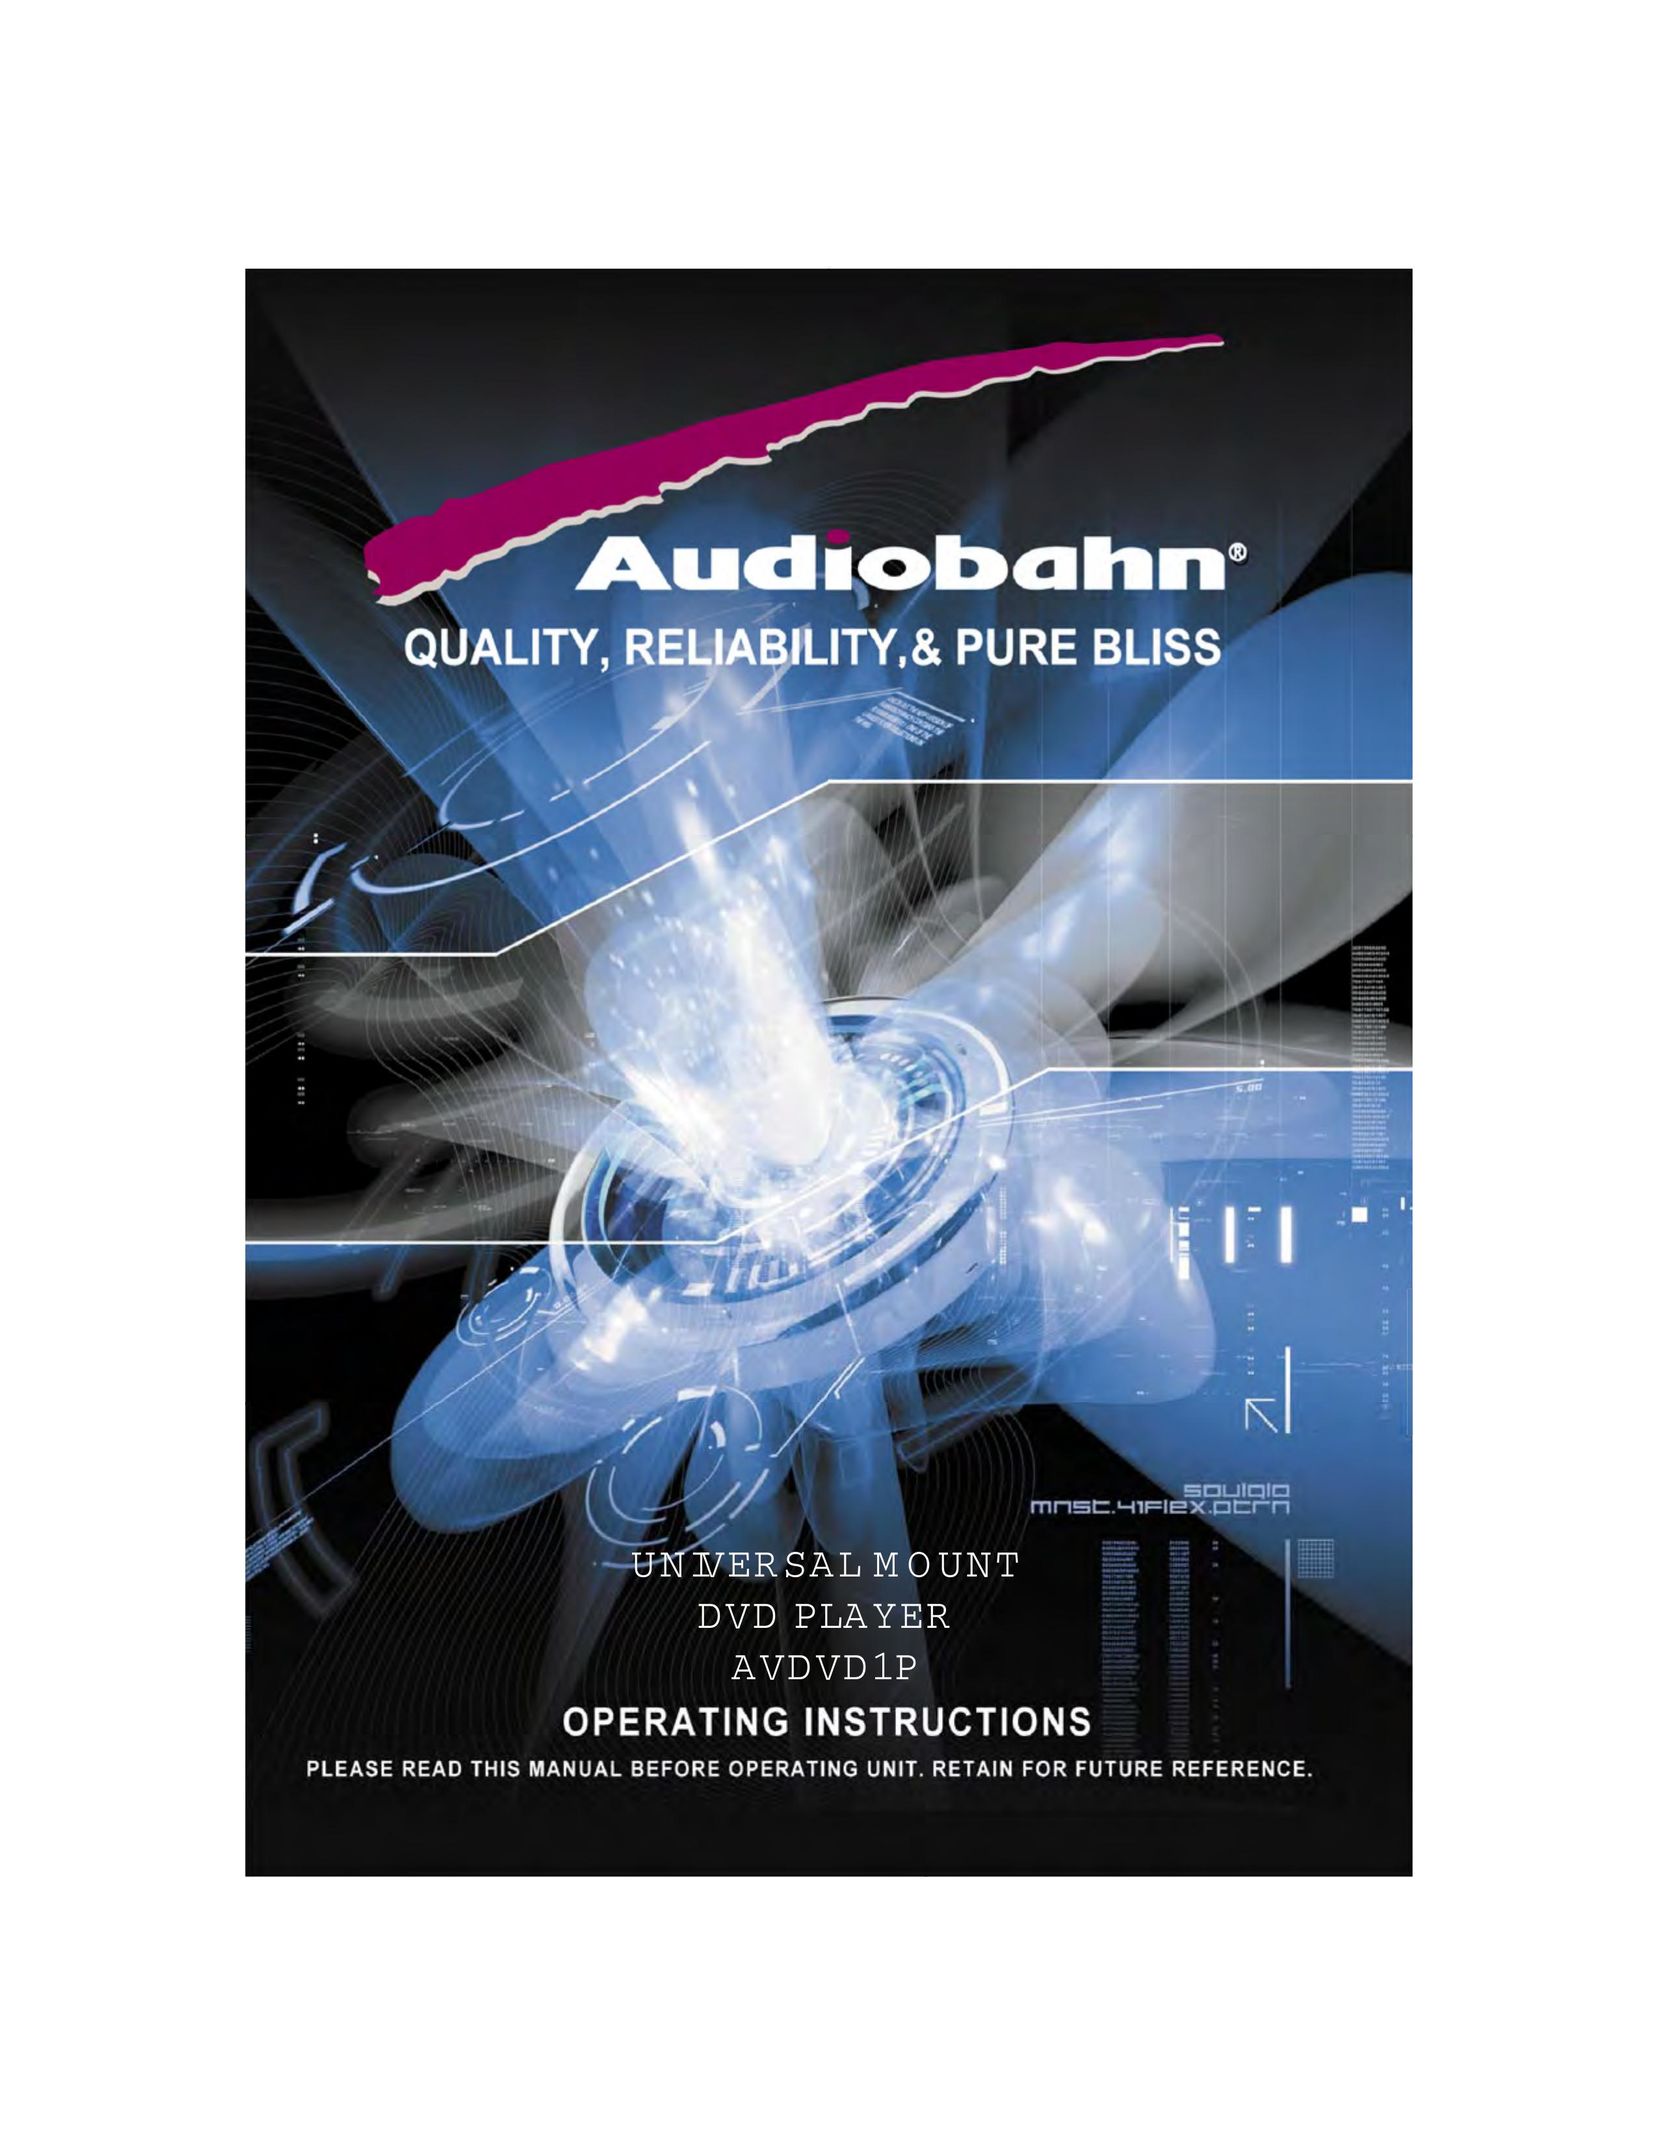 AudioBahn AVDVD1P DVD Player User Manual